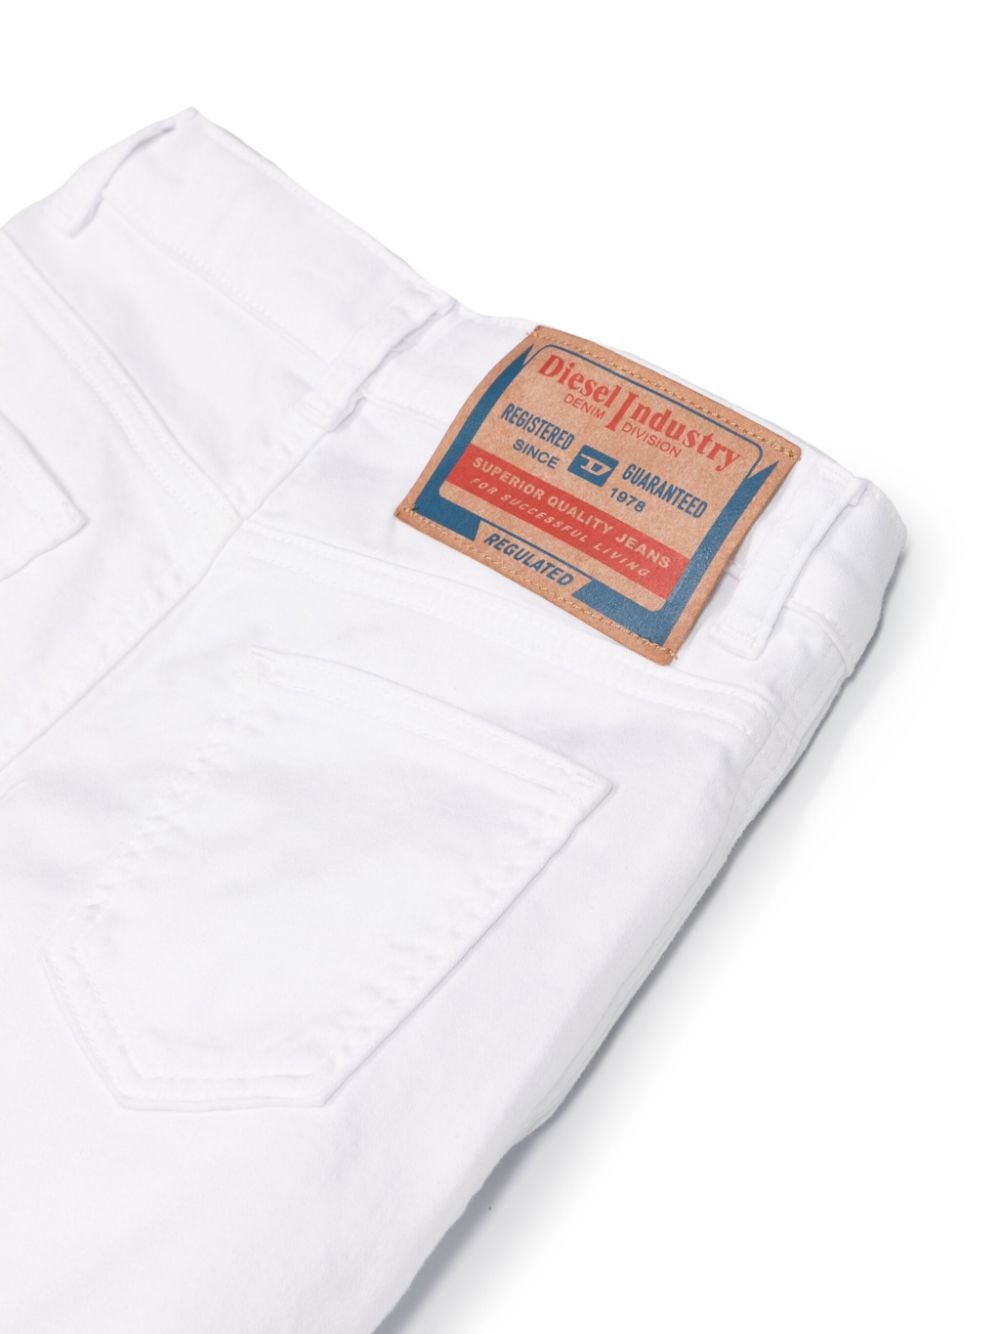 White Bermuda shorts for children